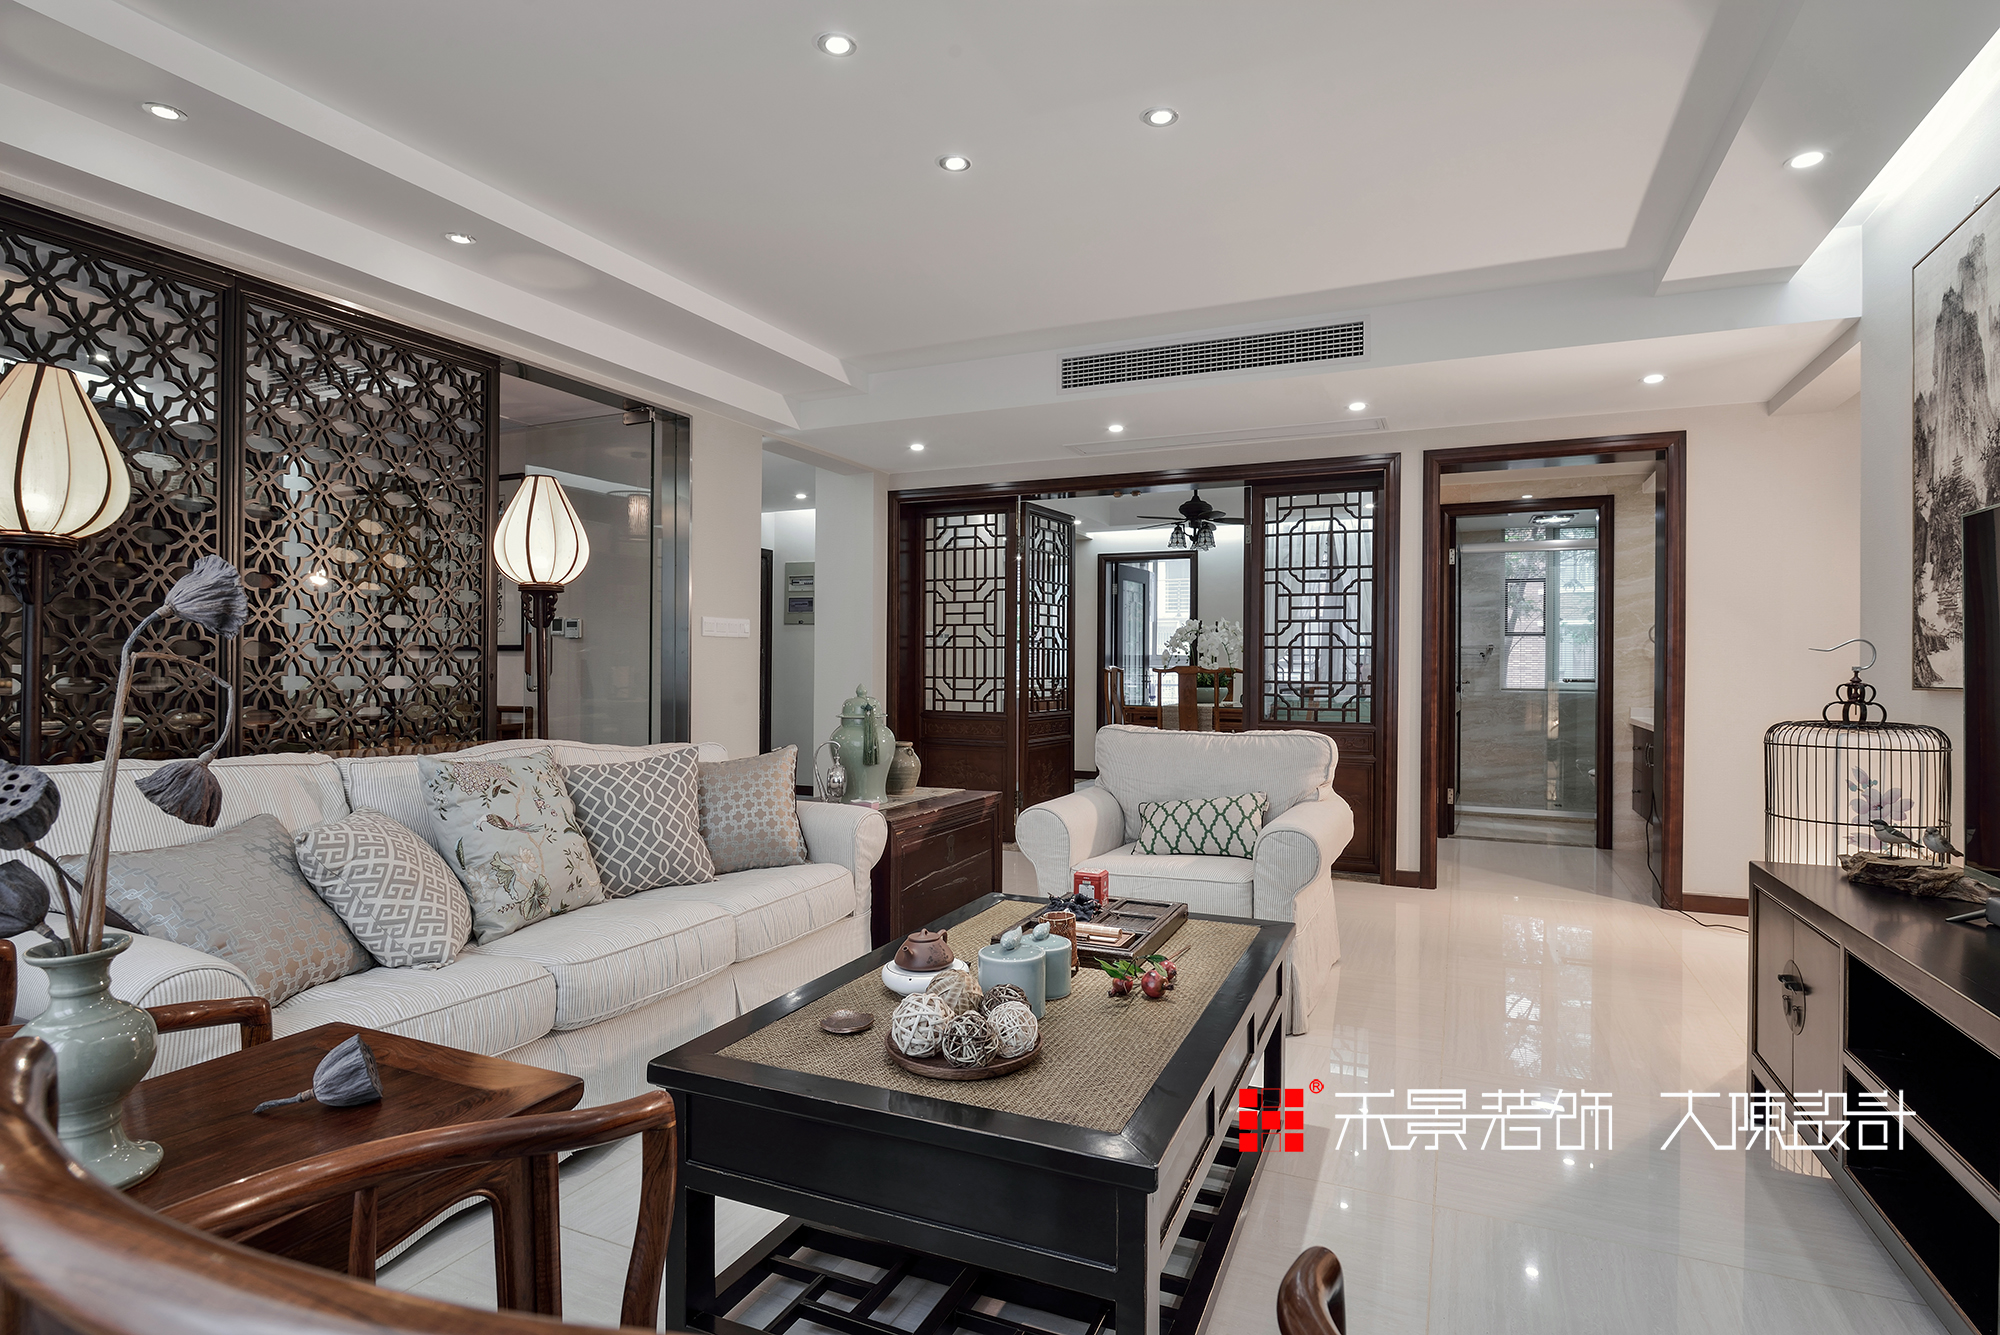 中式 客厅图片来自禾景大陈设计在空谷幽兰亦芬芳的分享